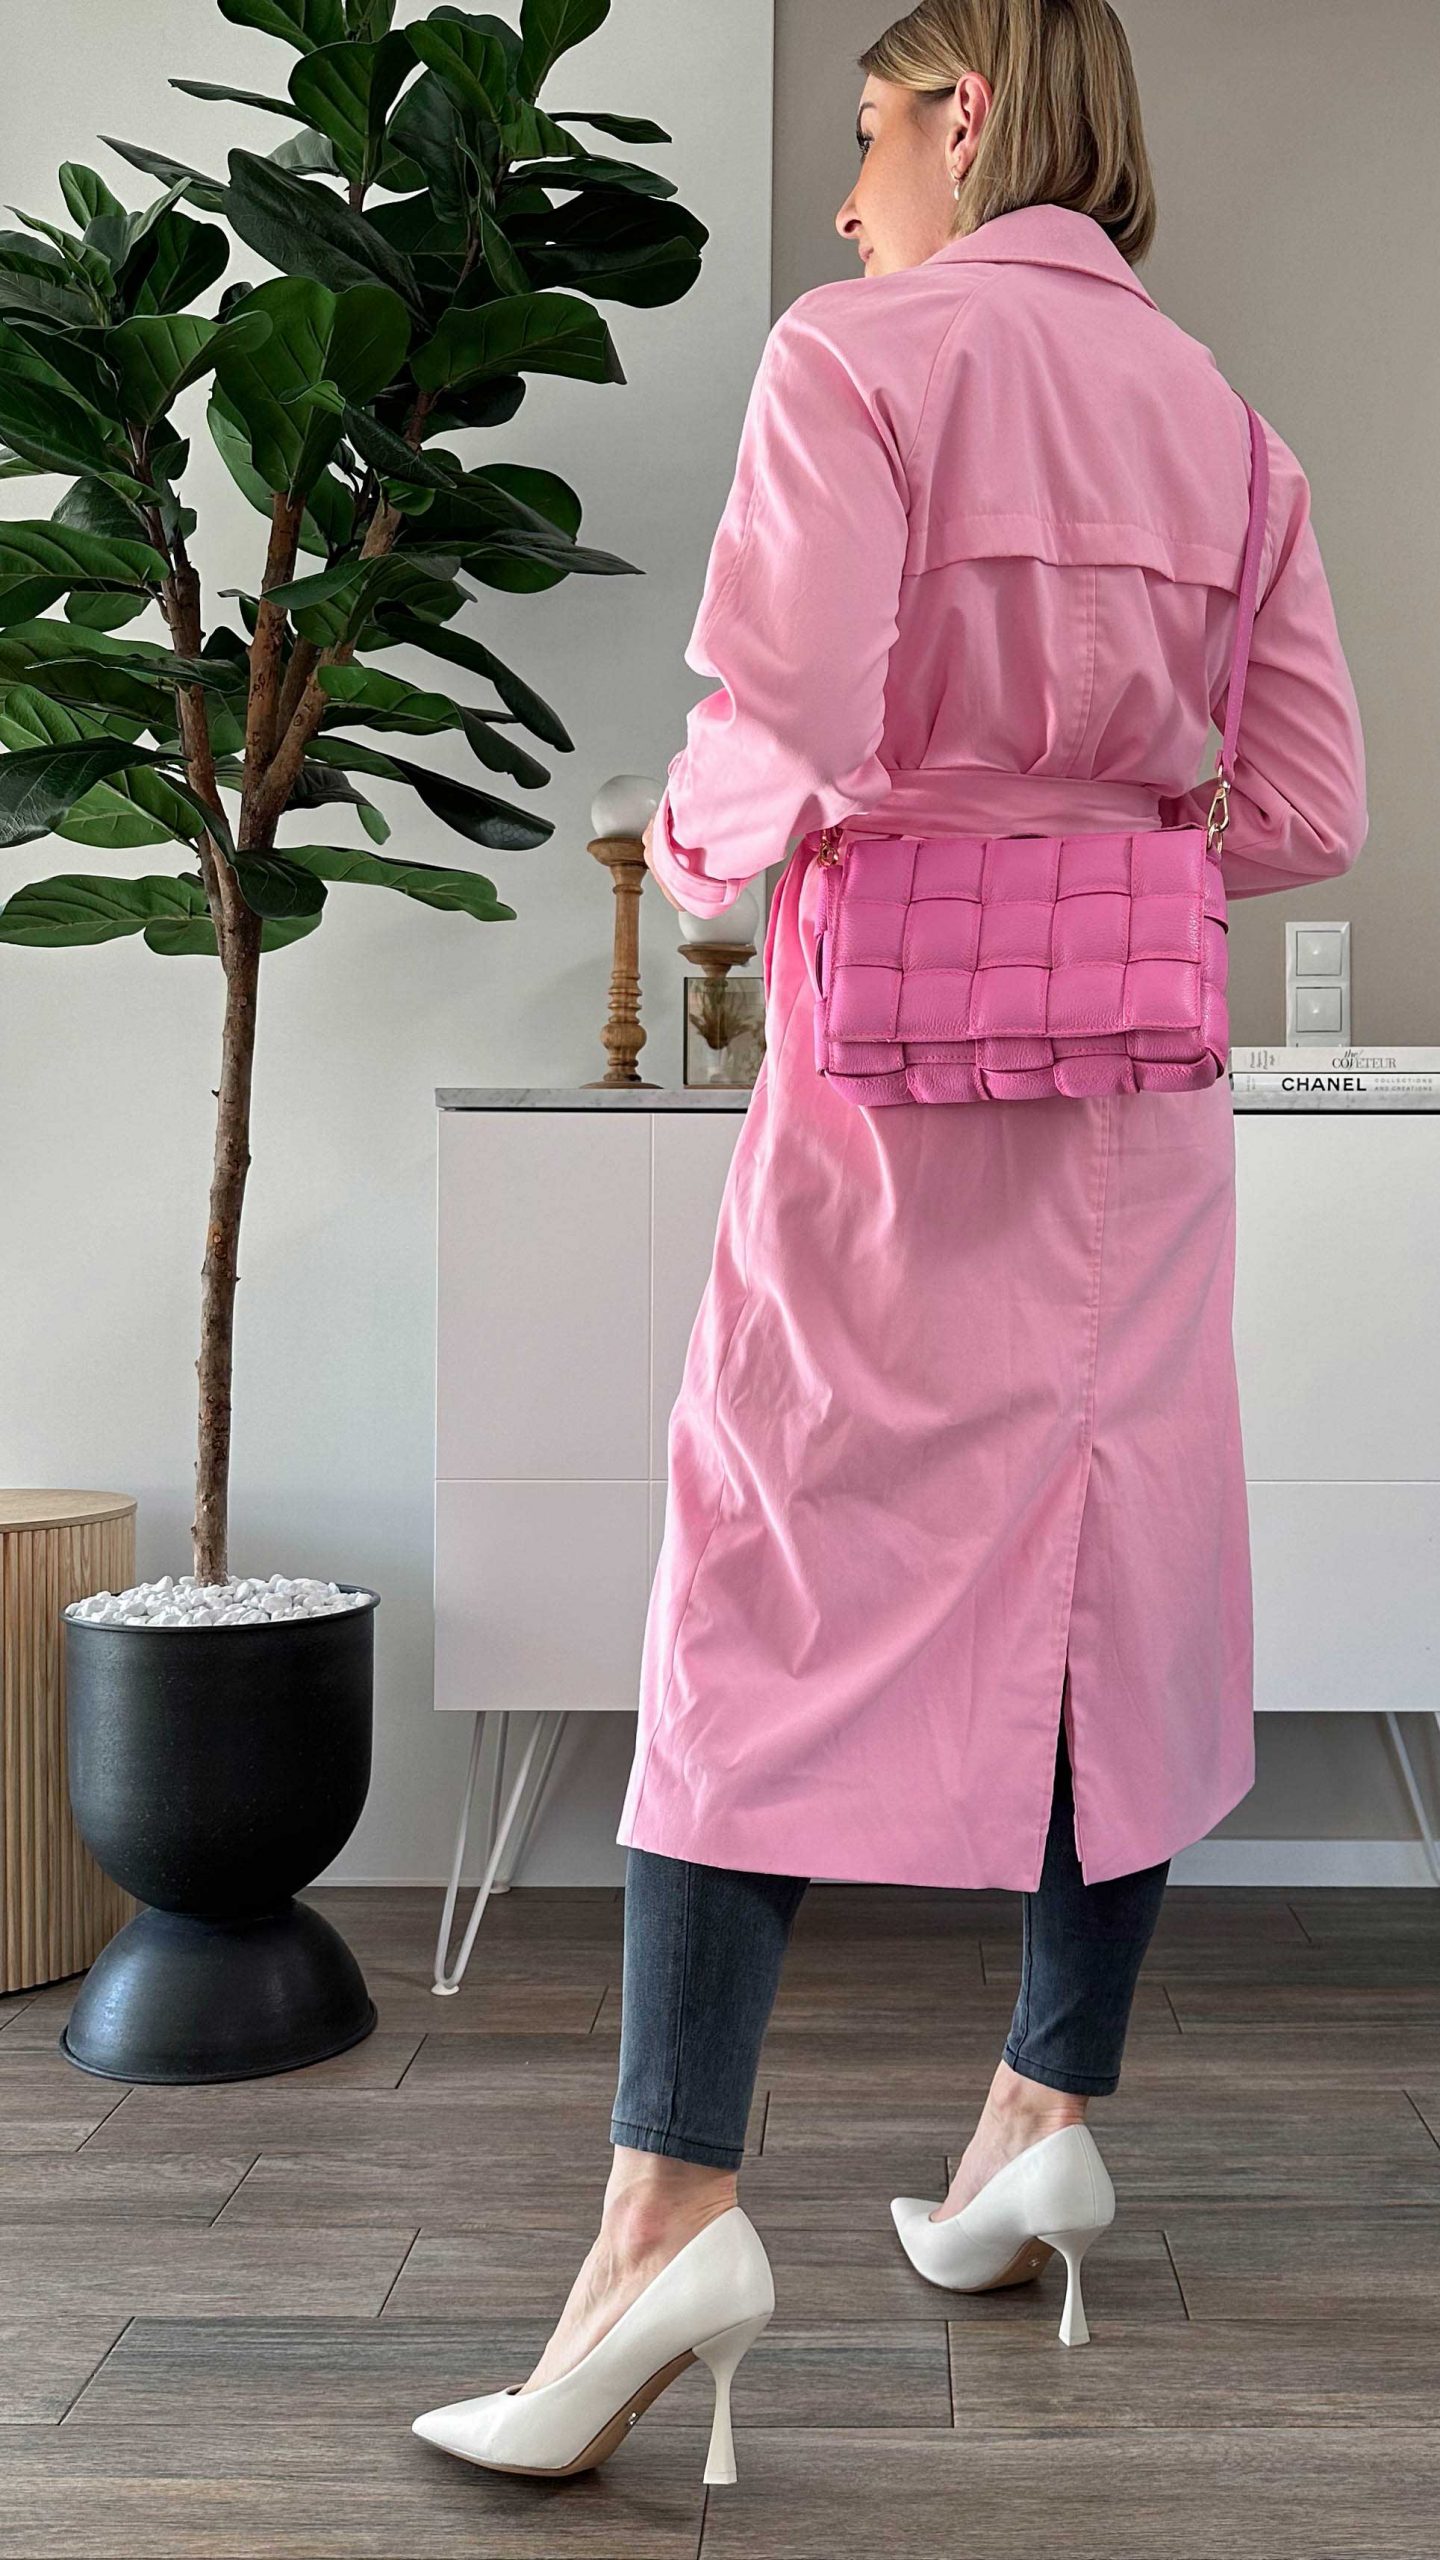 Einen rosa Trenchcoat kombinieren? Ich zeige dir dieses Frühlingsoutfit am Modeblog und stelle dir die Modetrends für das Frühjahr vor. www.whoismocca.com